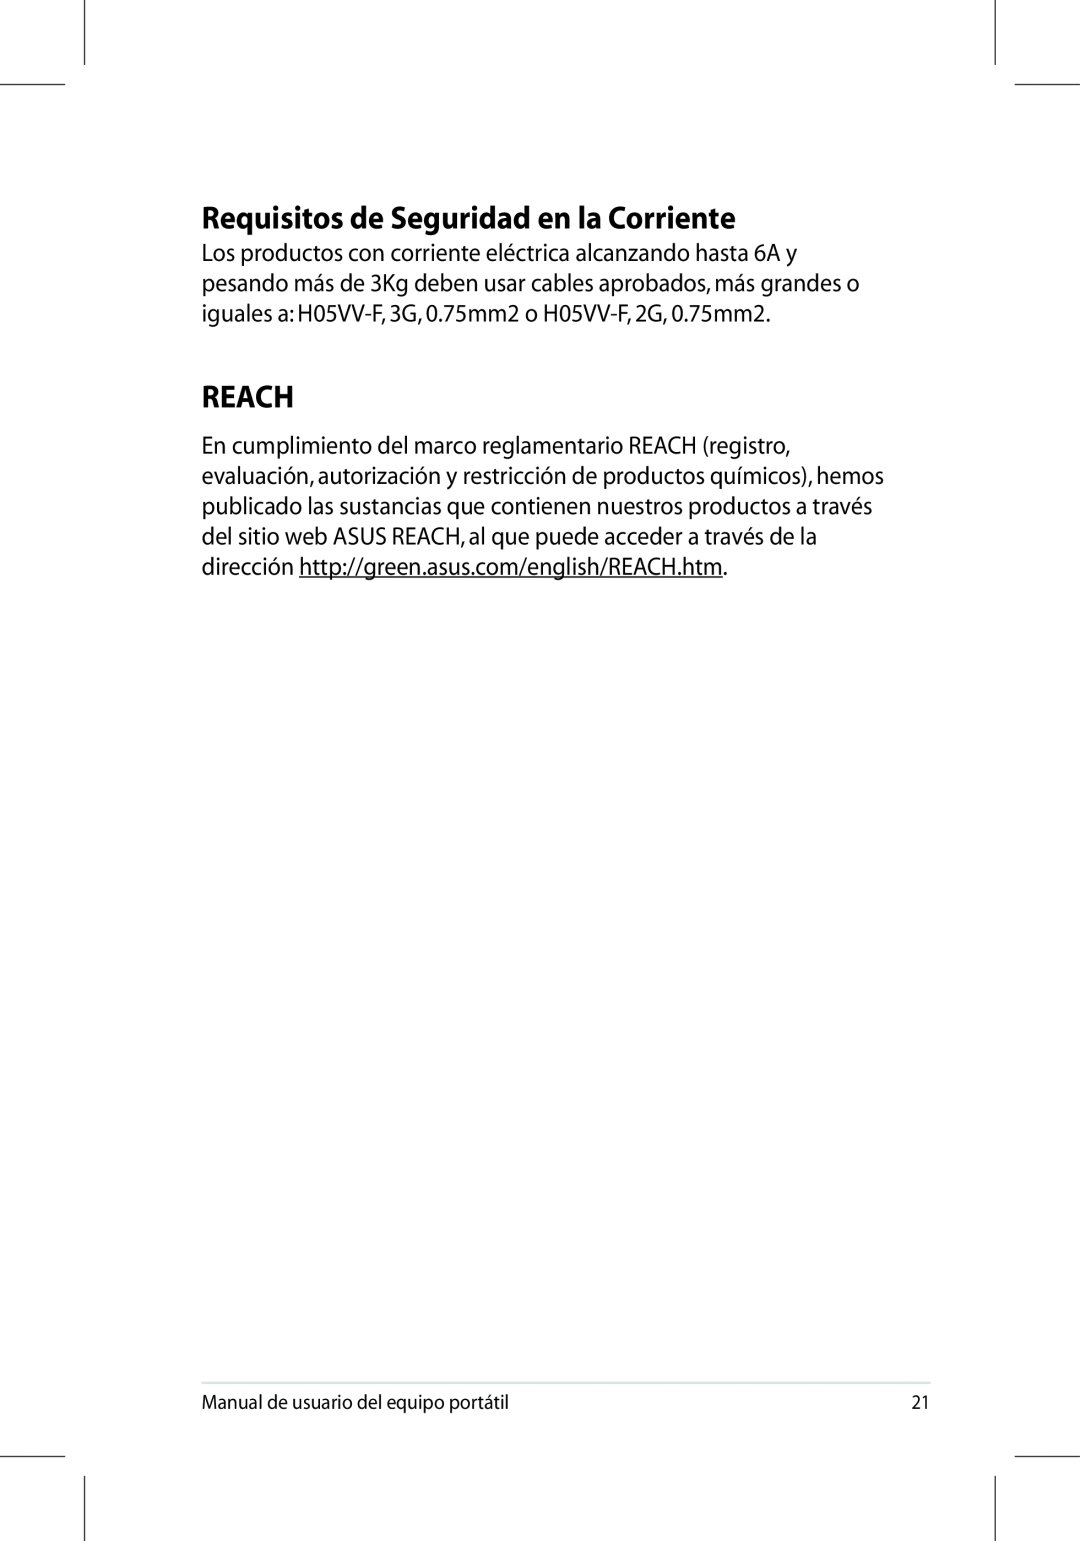 Asus UL50/PRO5G/X5G manual Requisitos de Seguridad en la Corriente, Reach 